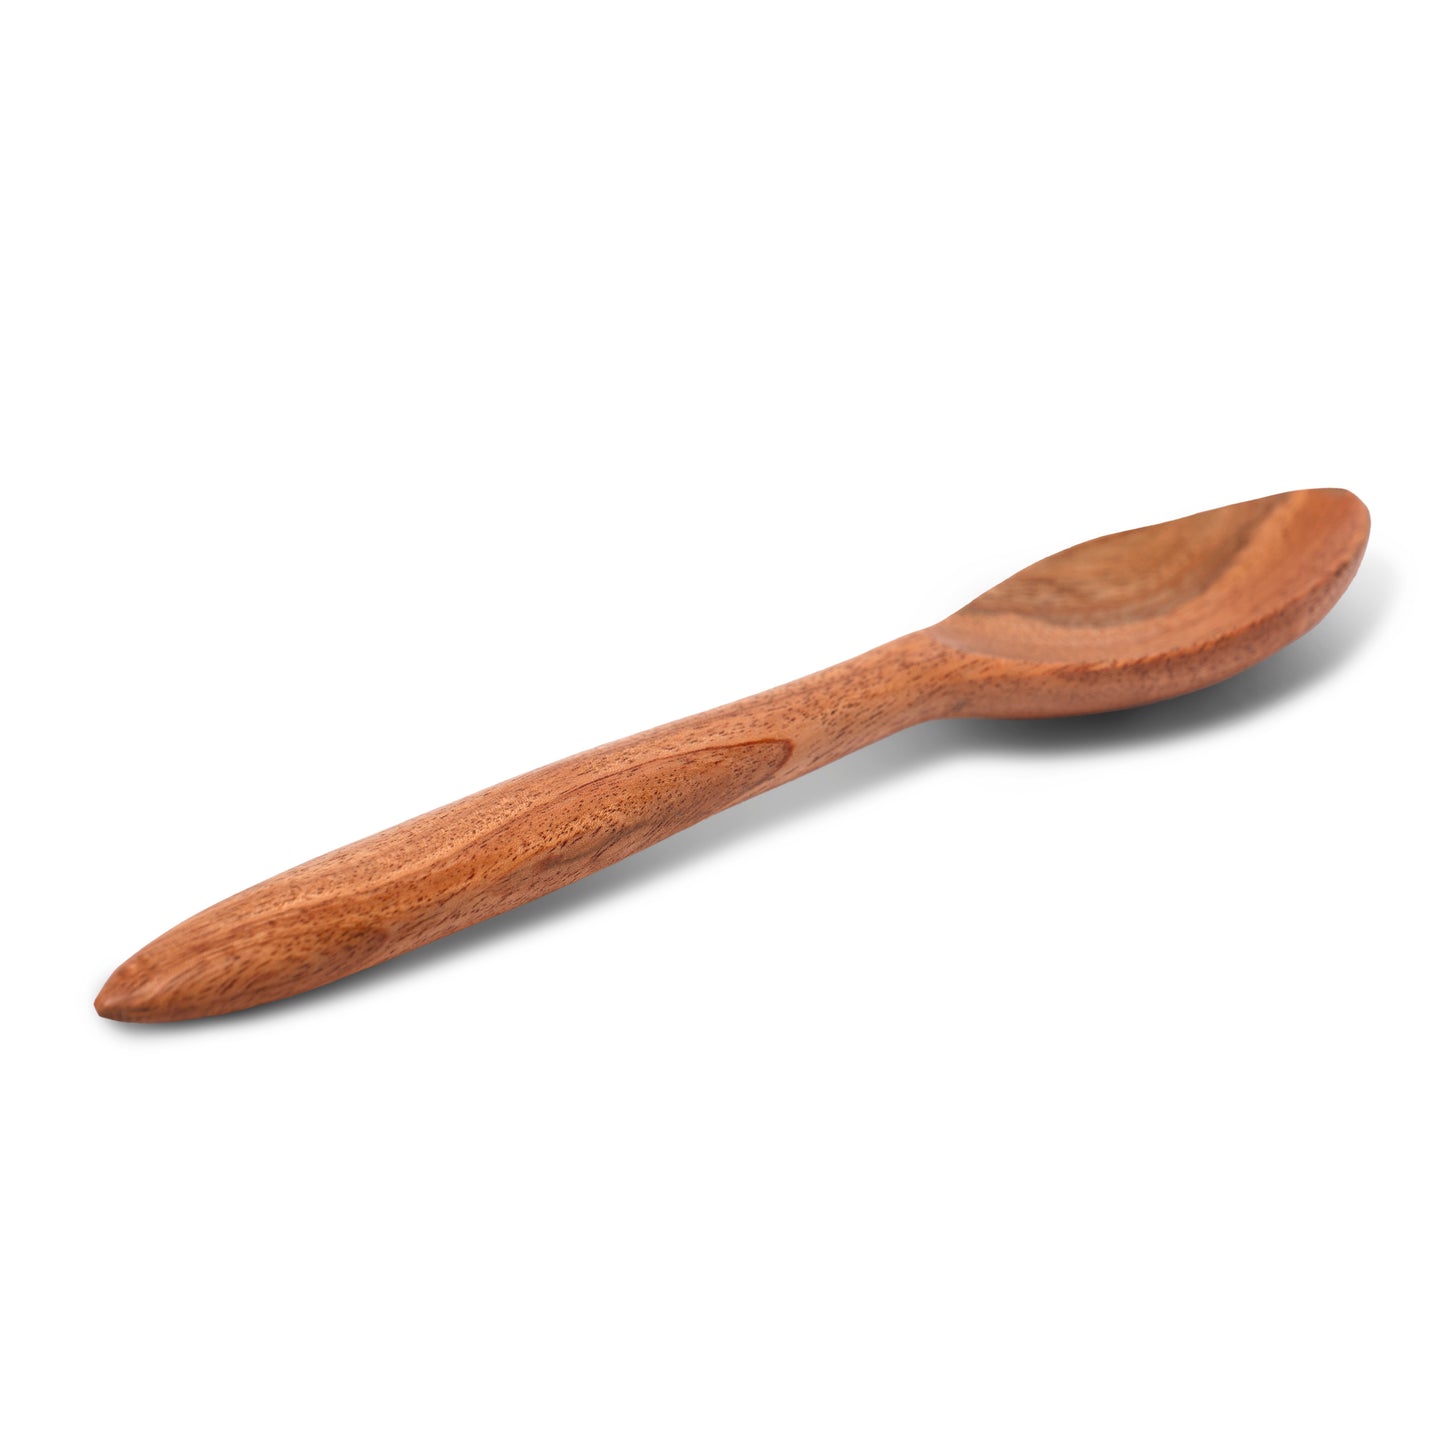 Wood Dinner Spoon